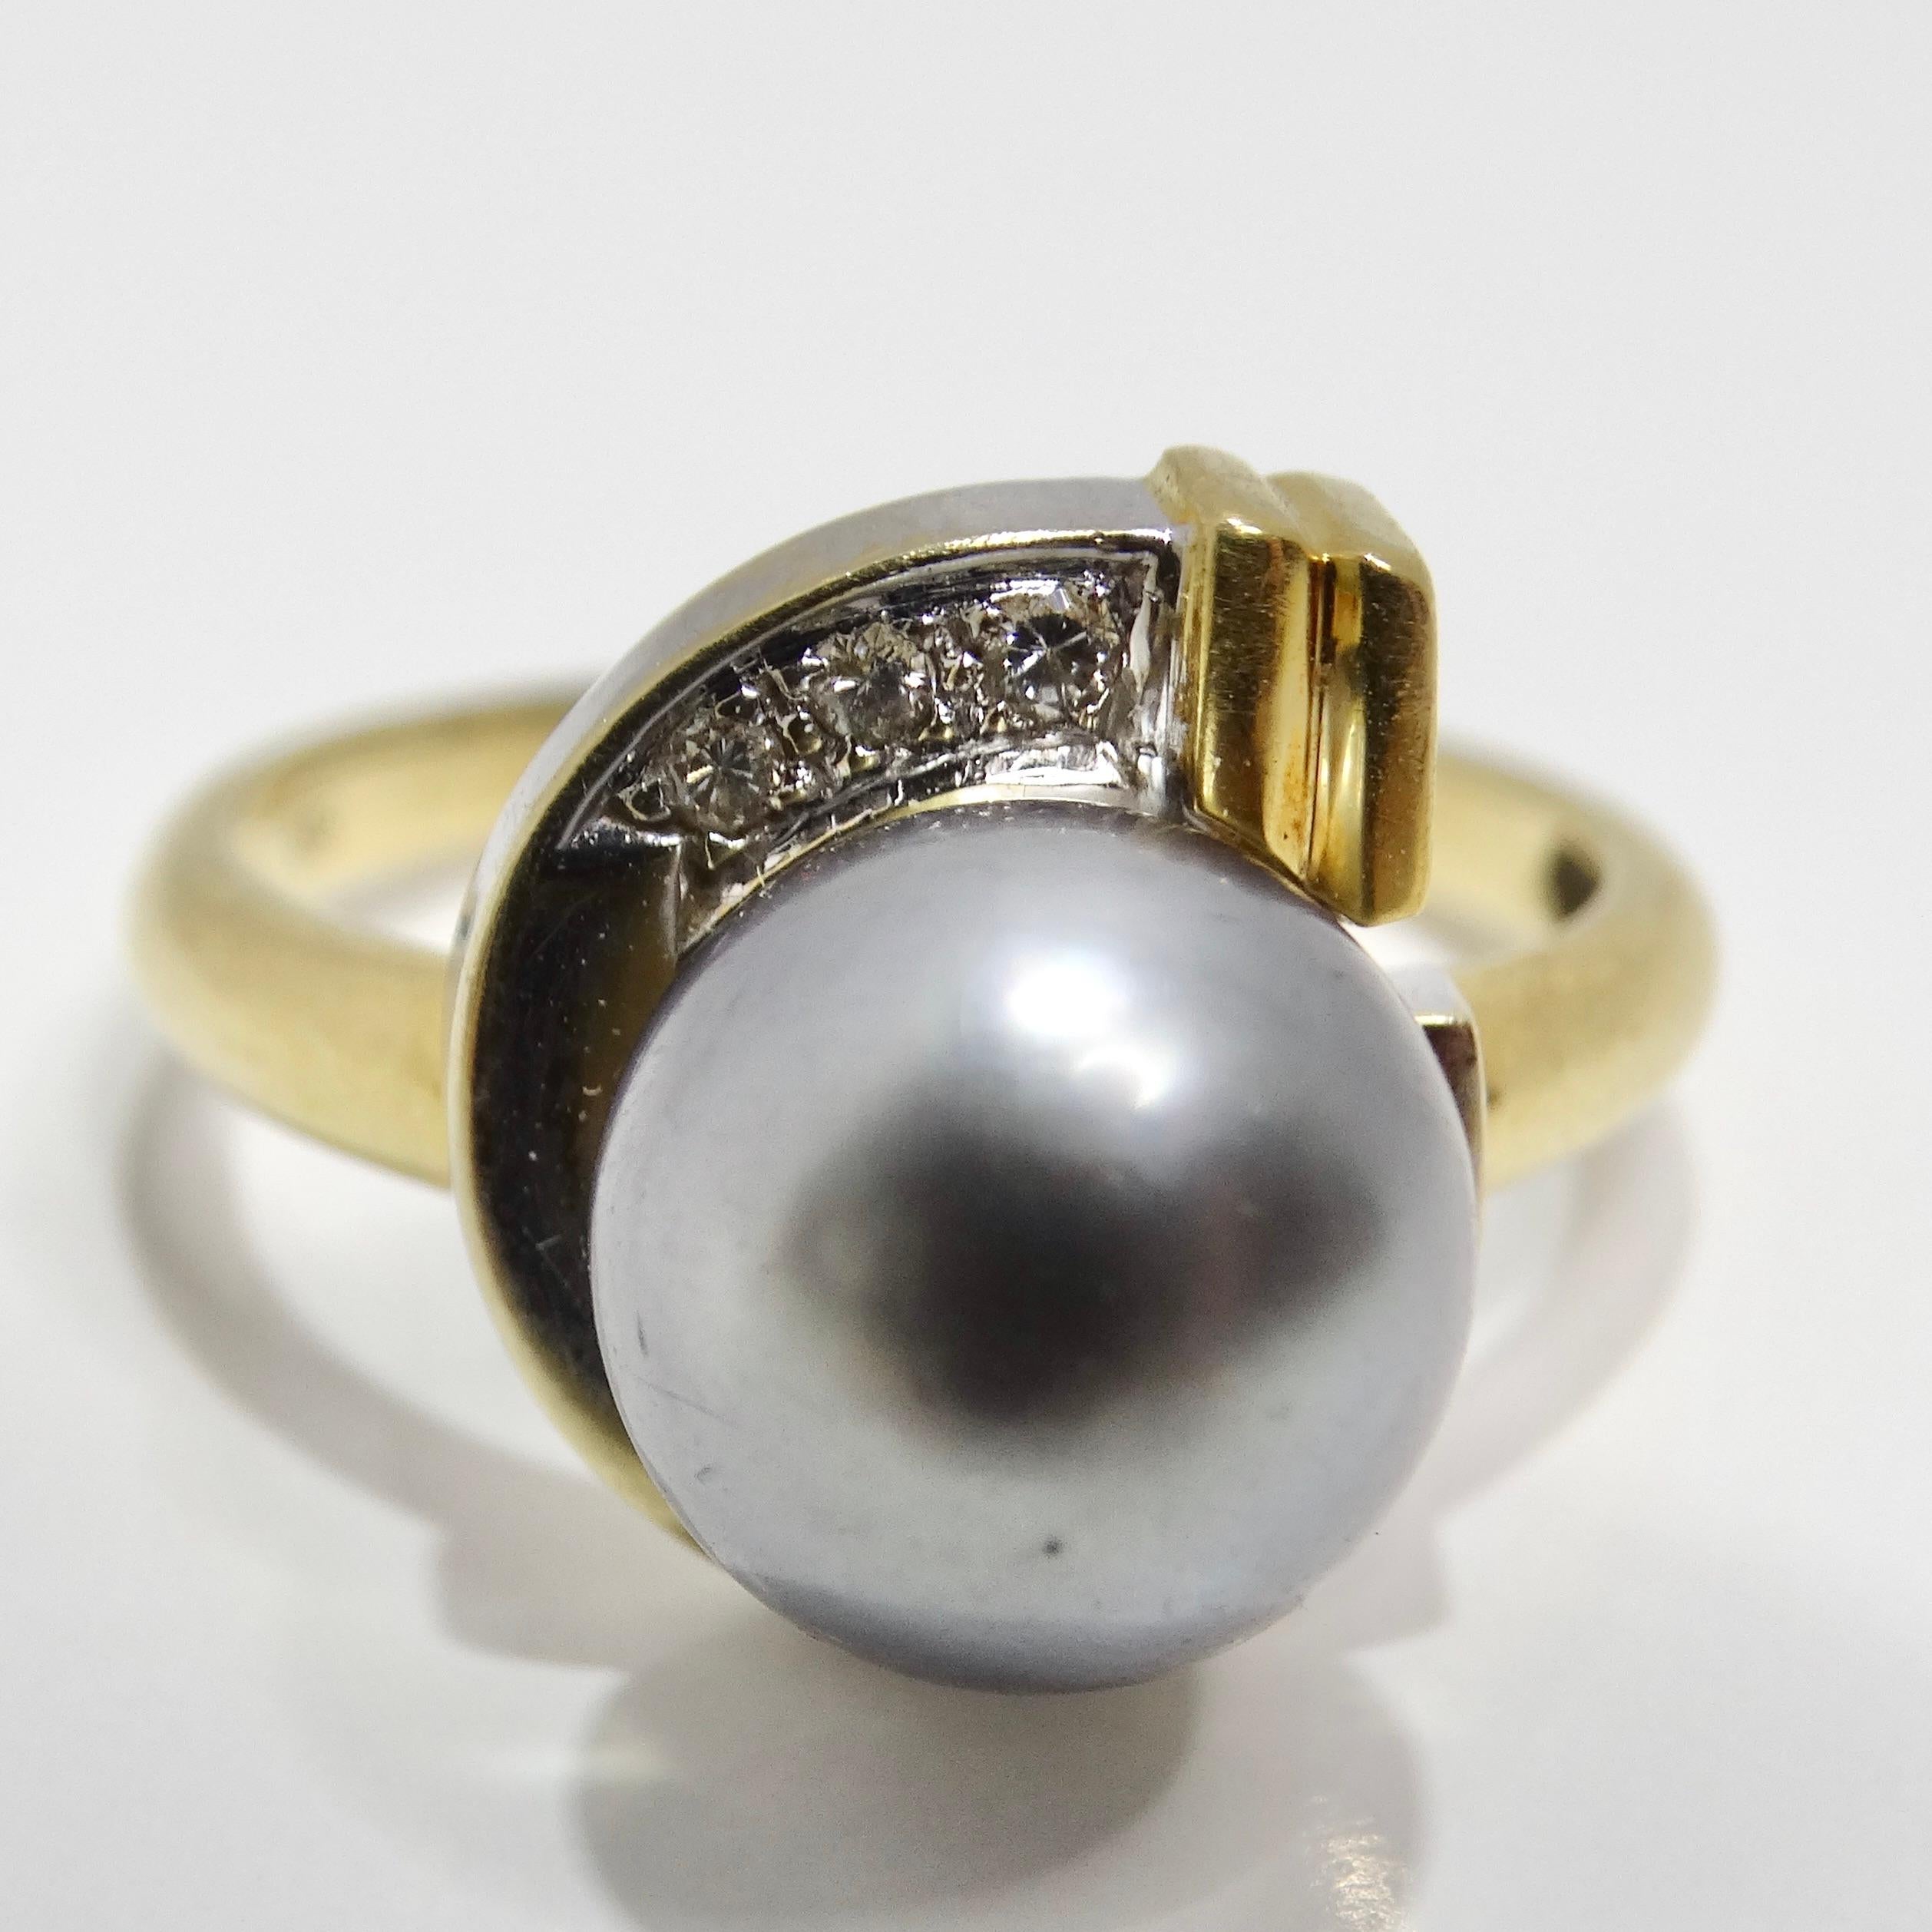 Der außergewöhnliche Ring aus 18 Karat Gold mit schwarzen Südseeperlen und Diamanten ist ein wahrhaft einzigartiges und besonderes Schmuckstück, das Eleganz und Raffinesse verkörpert. Dieser 1970 gefertigte Ring zeigt eine atemberaubende schwarze